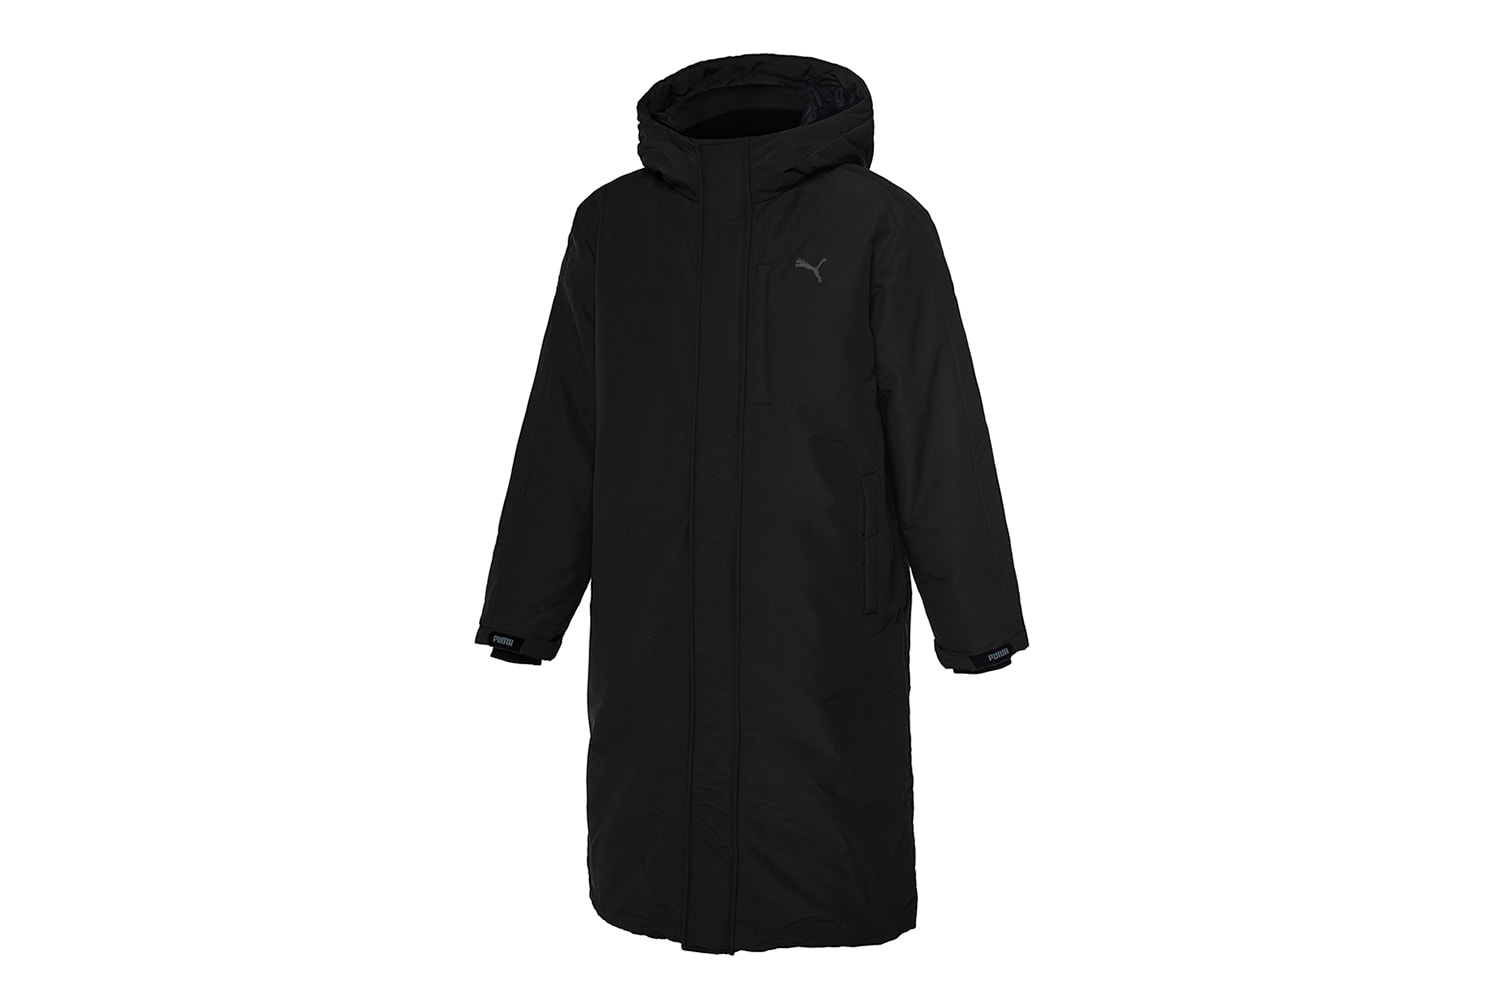 푸마 2018 겨울 윈터 재킷 캠페인 puma-bts-winter-jacket